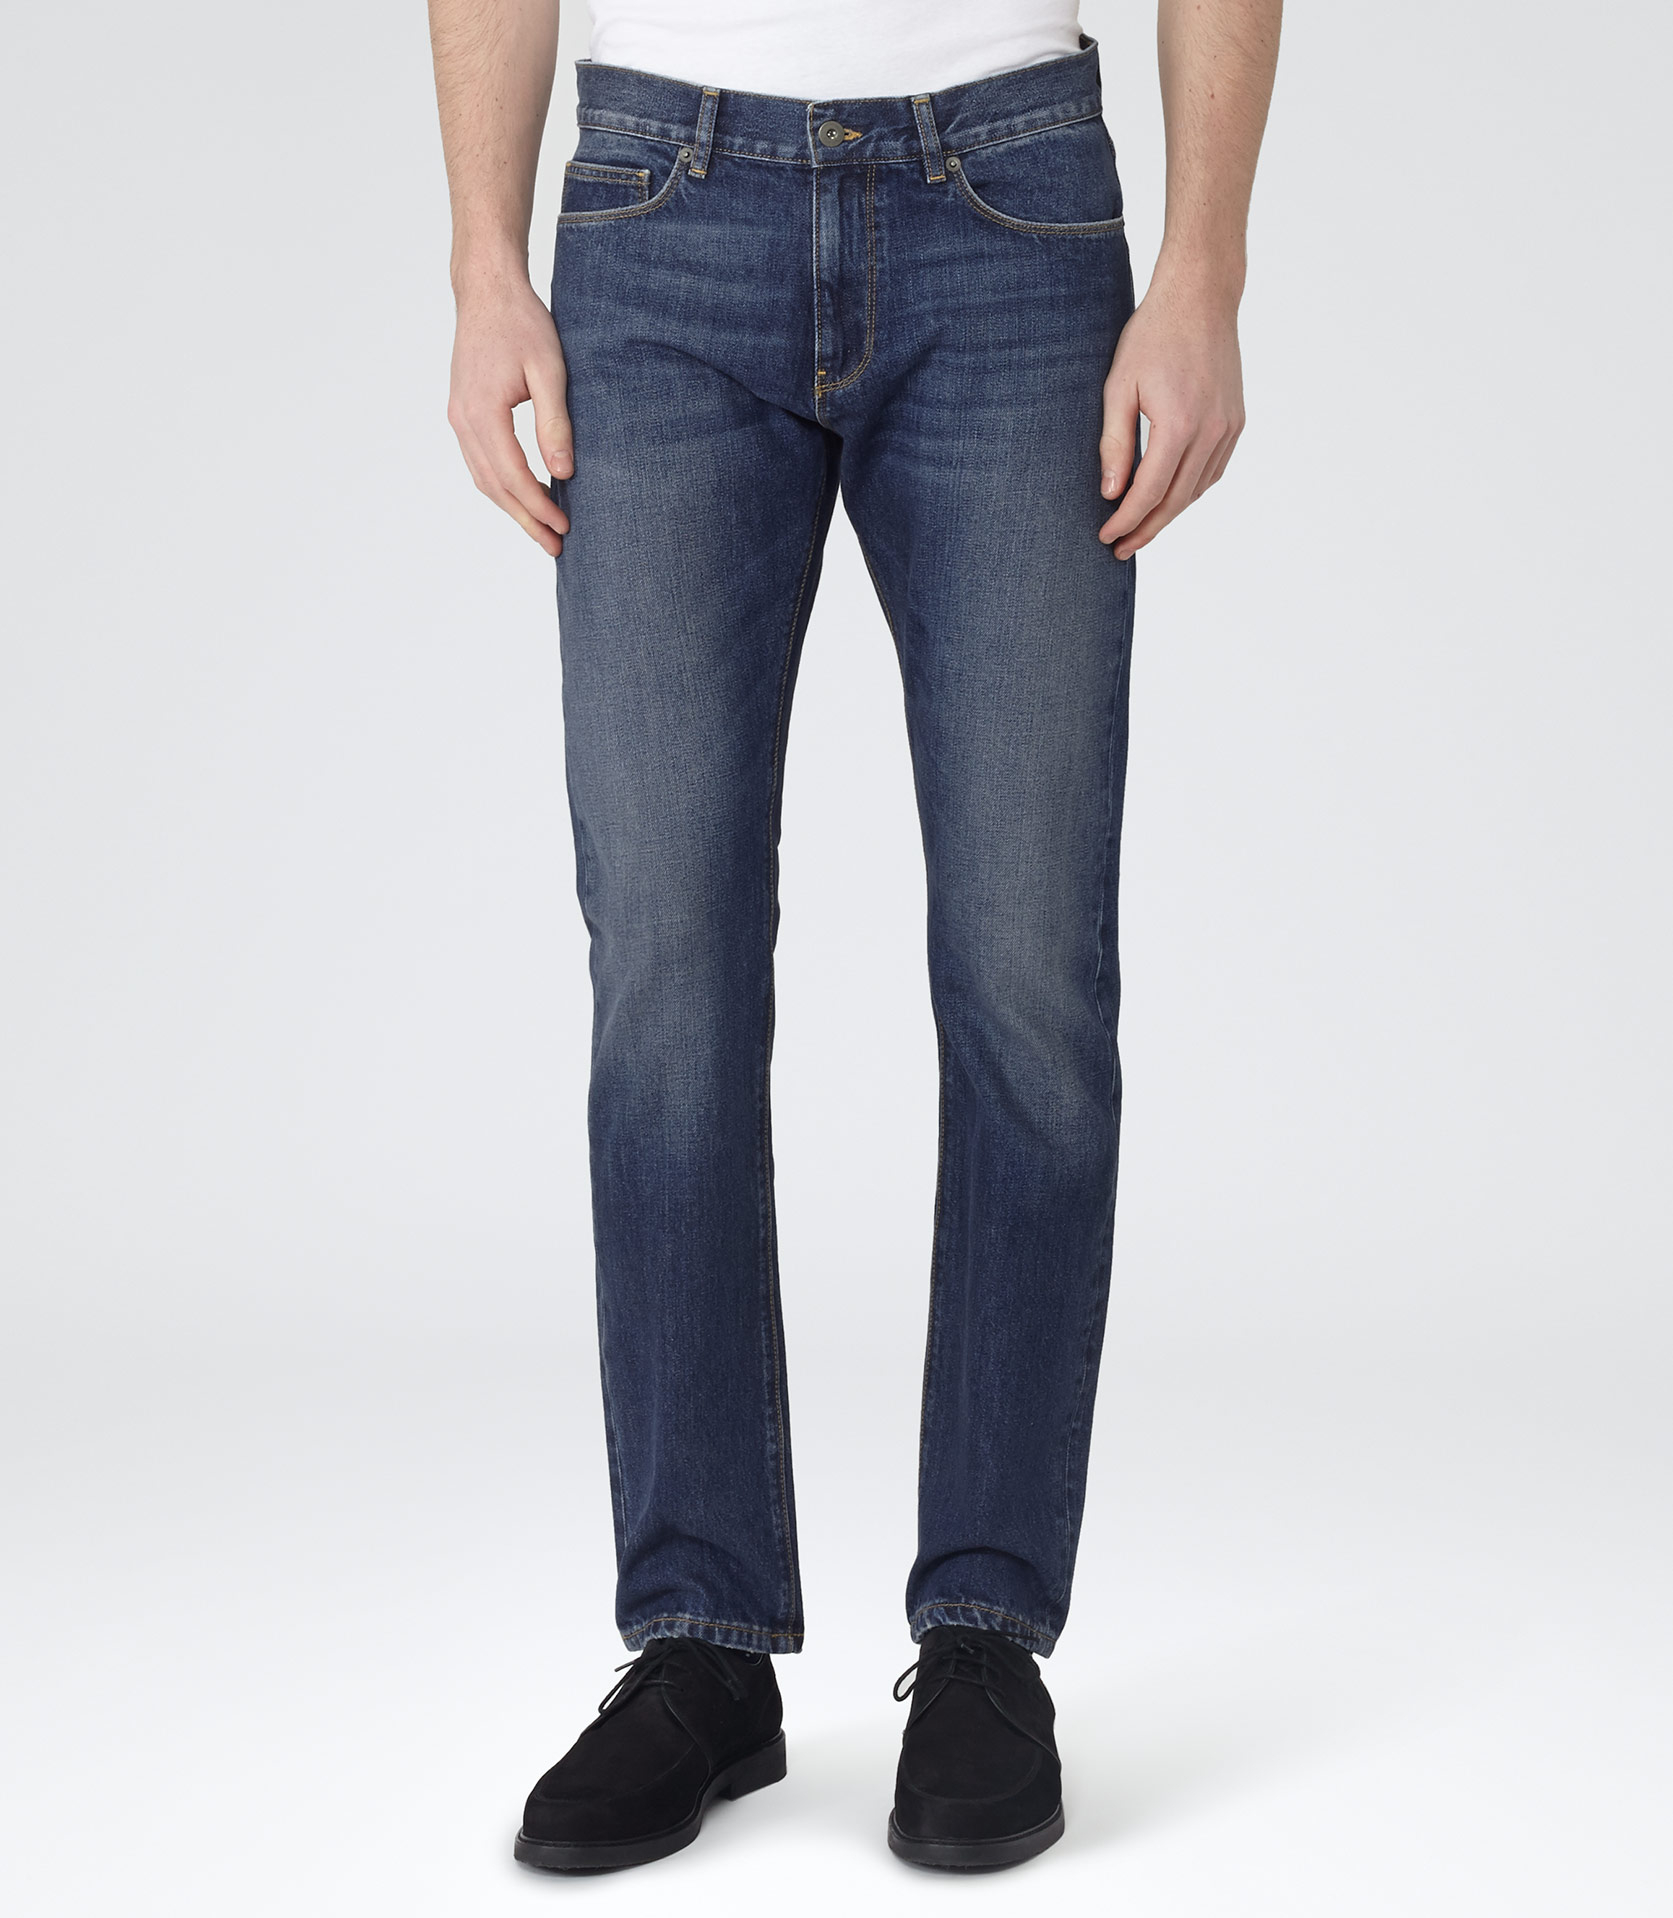 Lyst - Reiss Roebuck Slim-Fit Jeans in Blue for Men